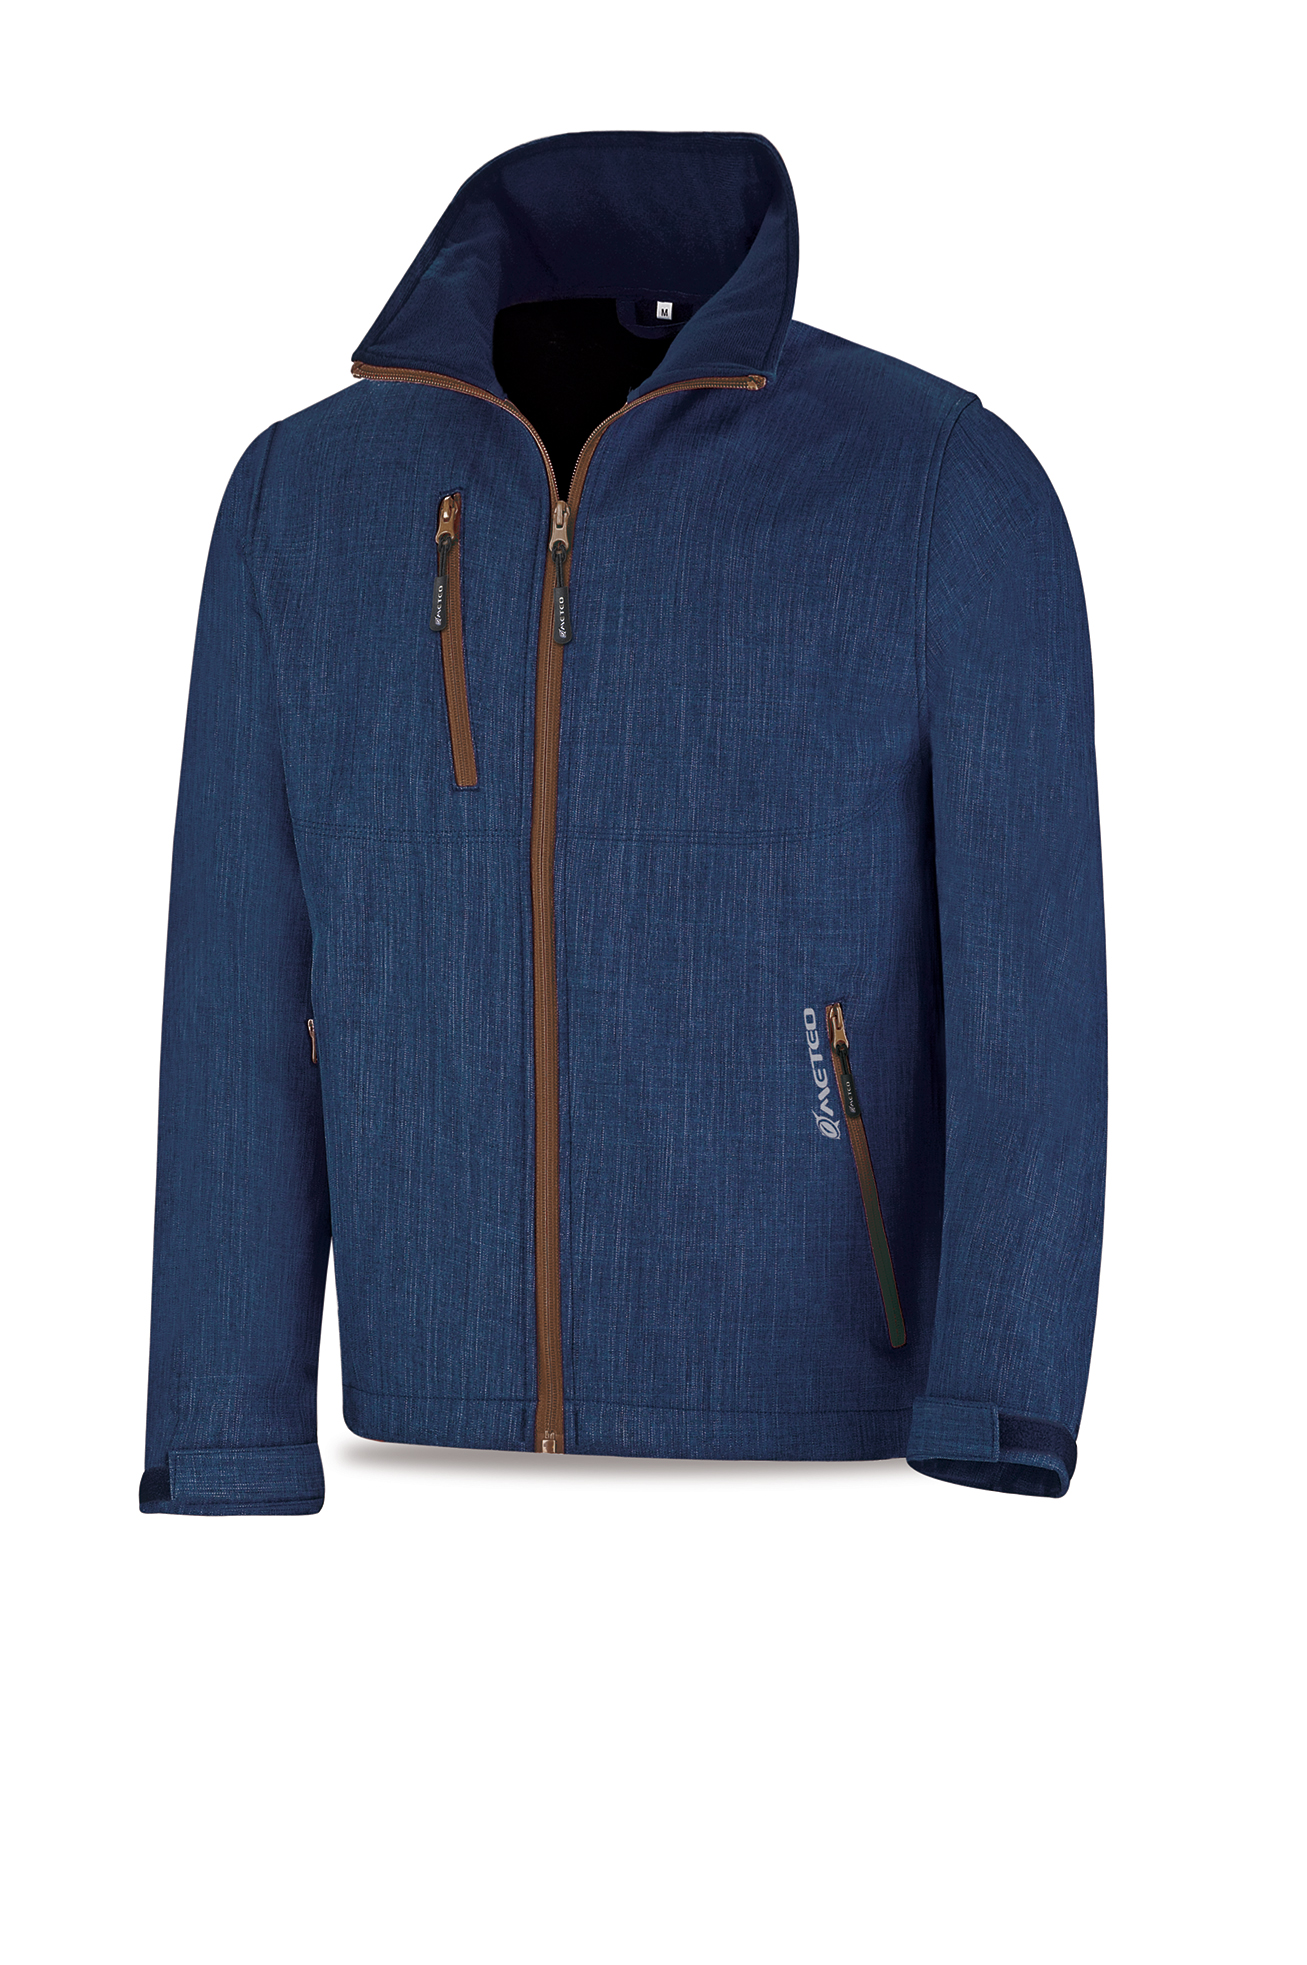 288-CPA Proteção e chuva Blusão Blusão NÁUTICA. Cor Azul marinho.